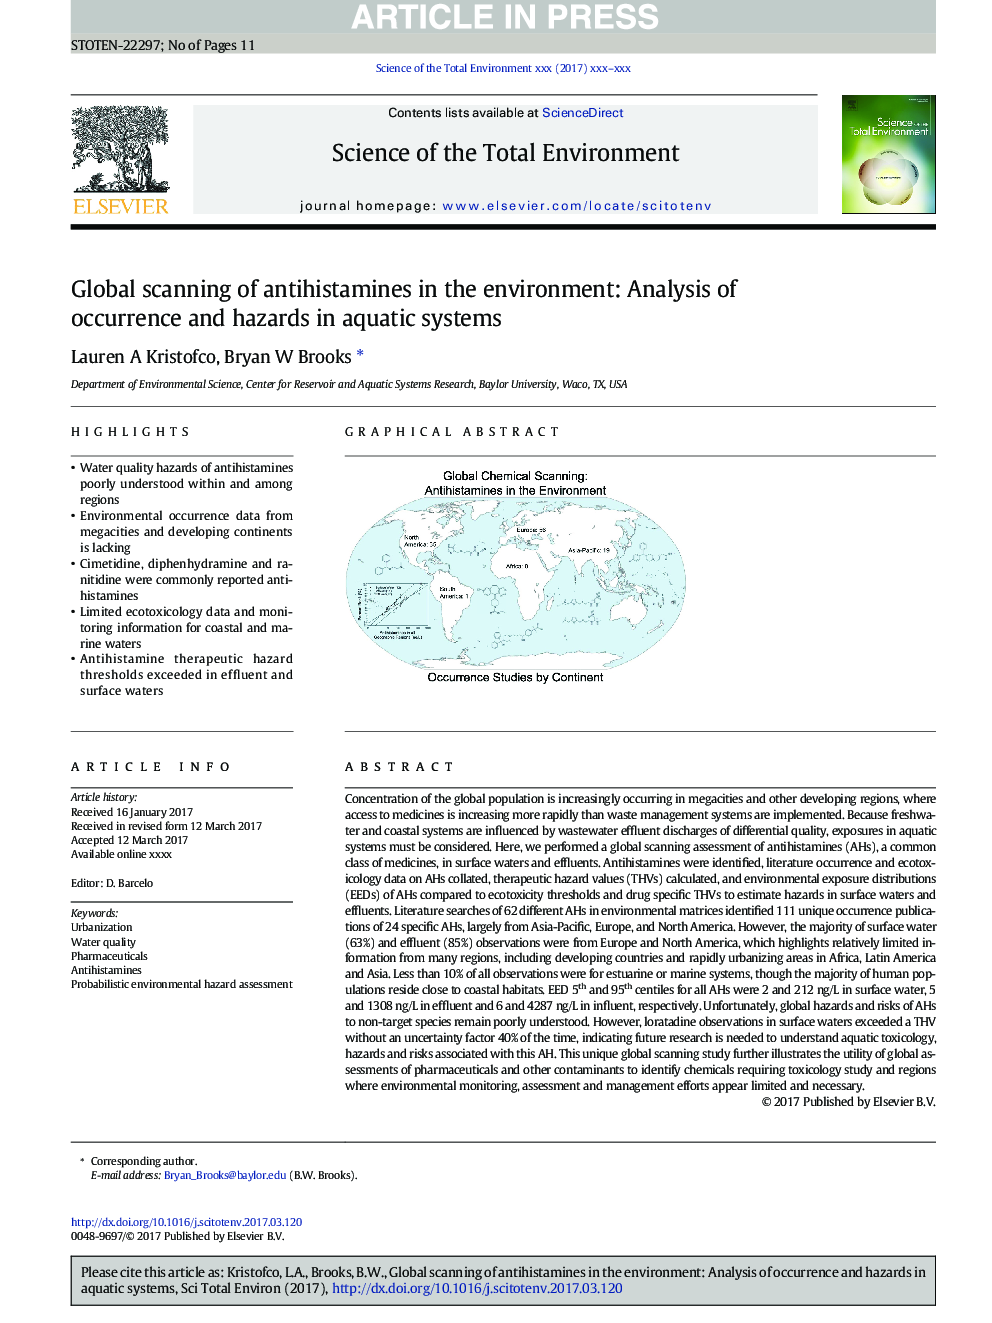 اسکن جهانی آنتی هیستامین در محیط زیست: تجزیه و تحلیل وقوع و خطرات در سیستم های آبزی 